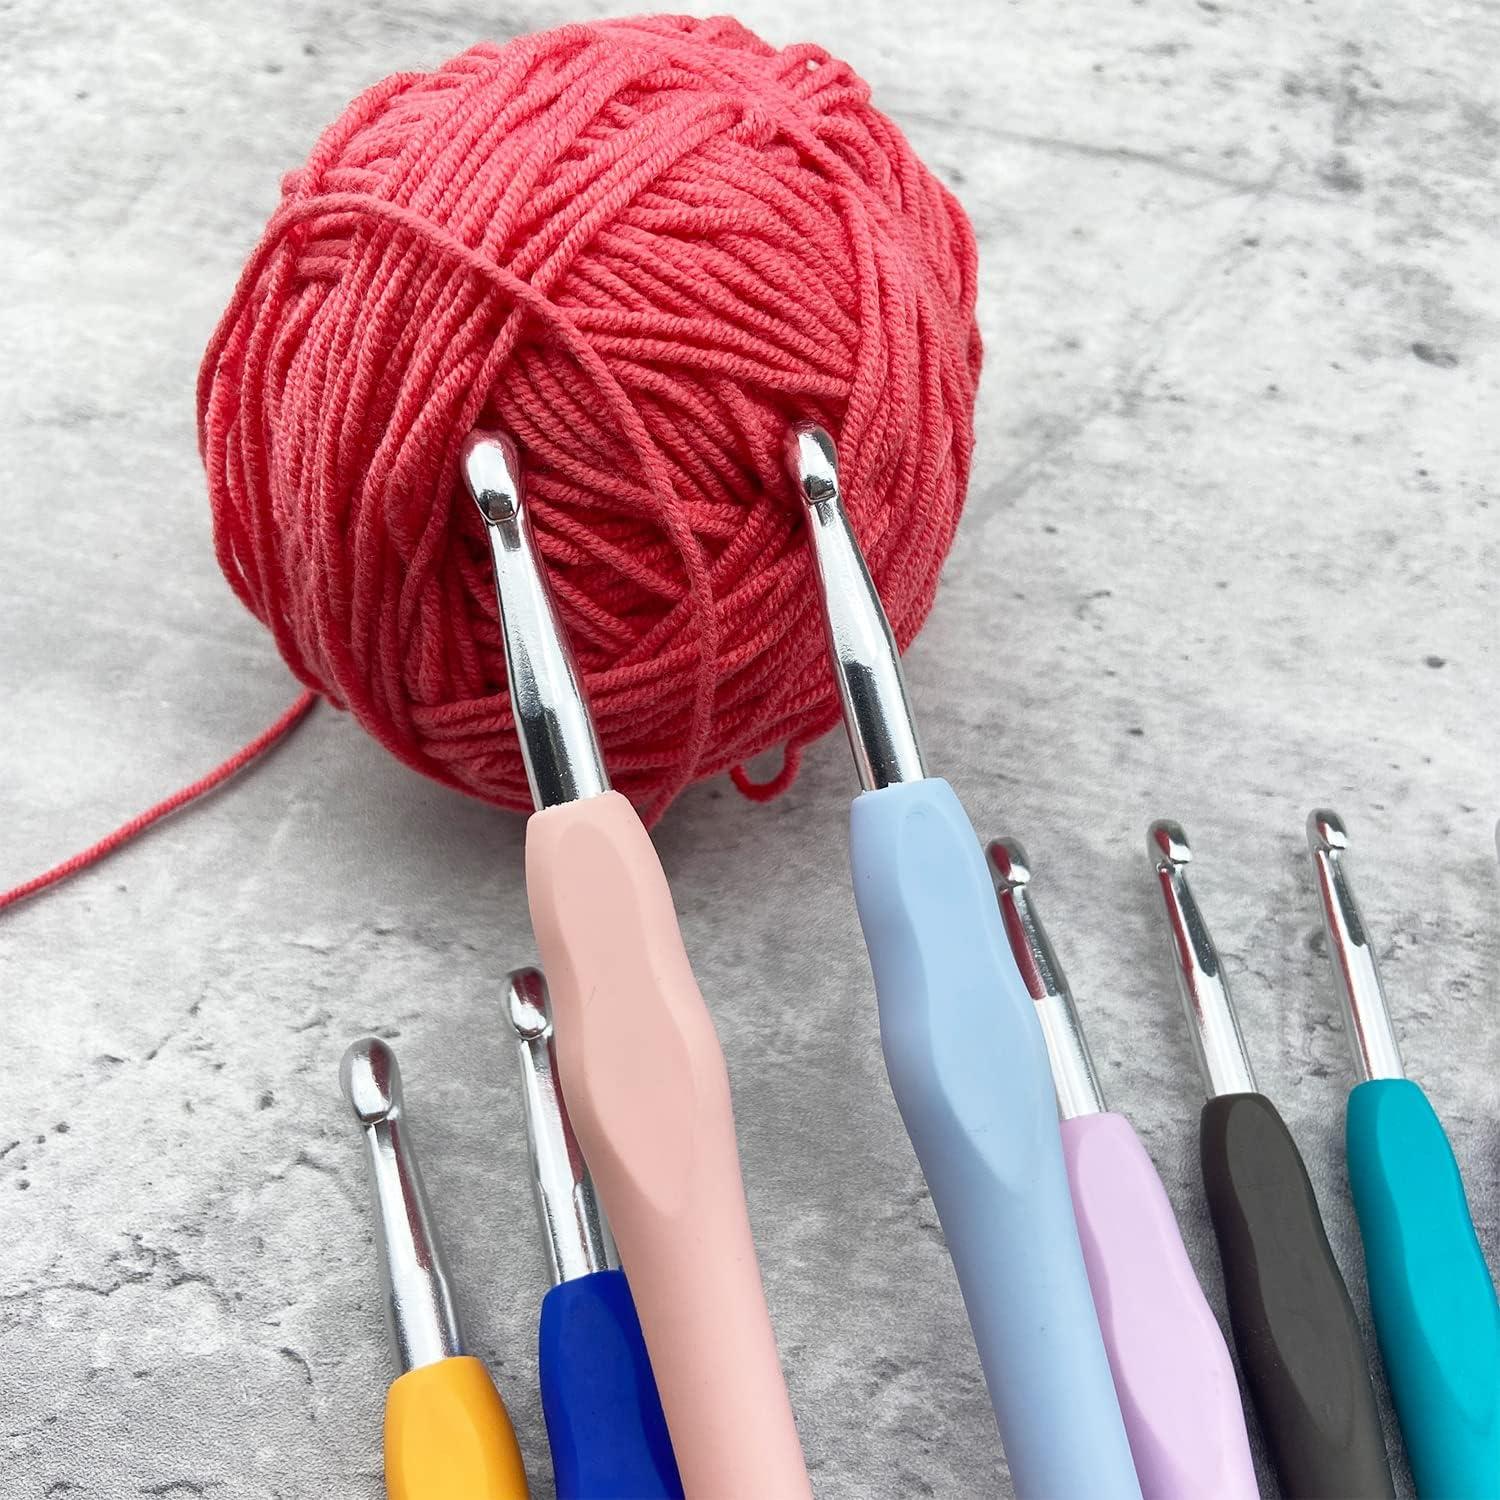 13 Sizes Crochet Hooks Set, 3.5 MM to 16 MM, Ergonomic Crochet Hooks for  Arthritic Hands, Knitting & Crocheting Needles, Extra Long Crochet Hooks  (Set